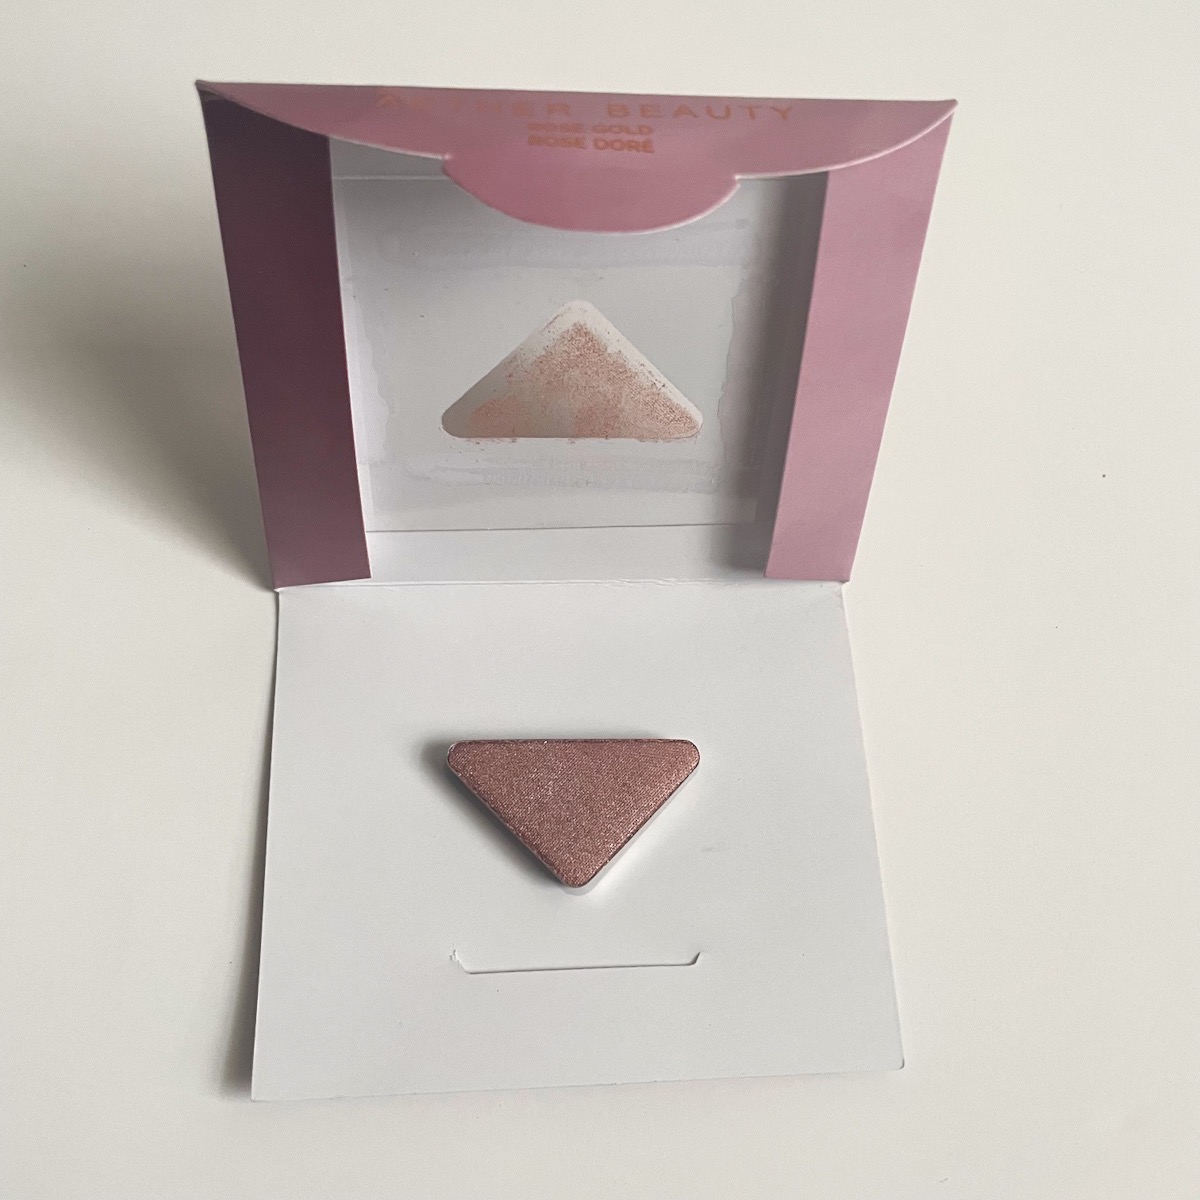 rose gold eyeshadow in packaging, open